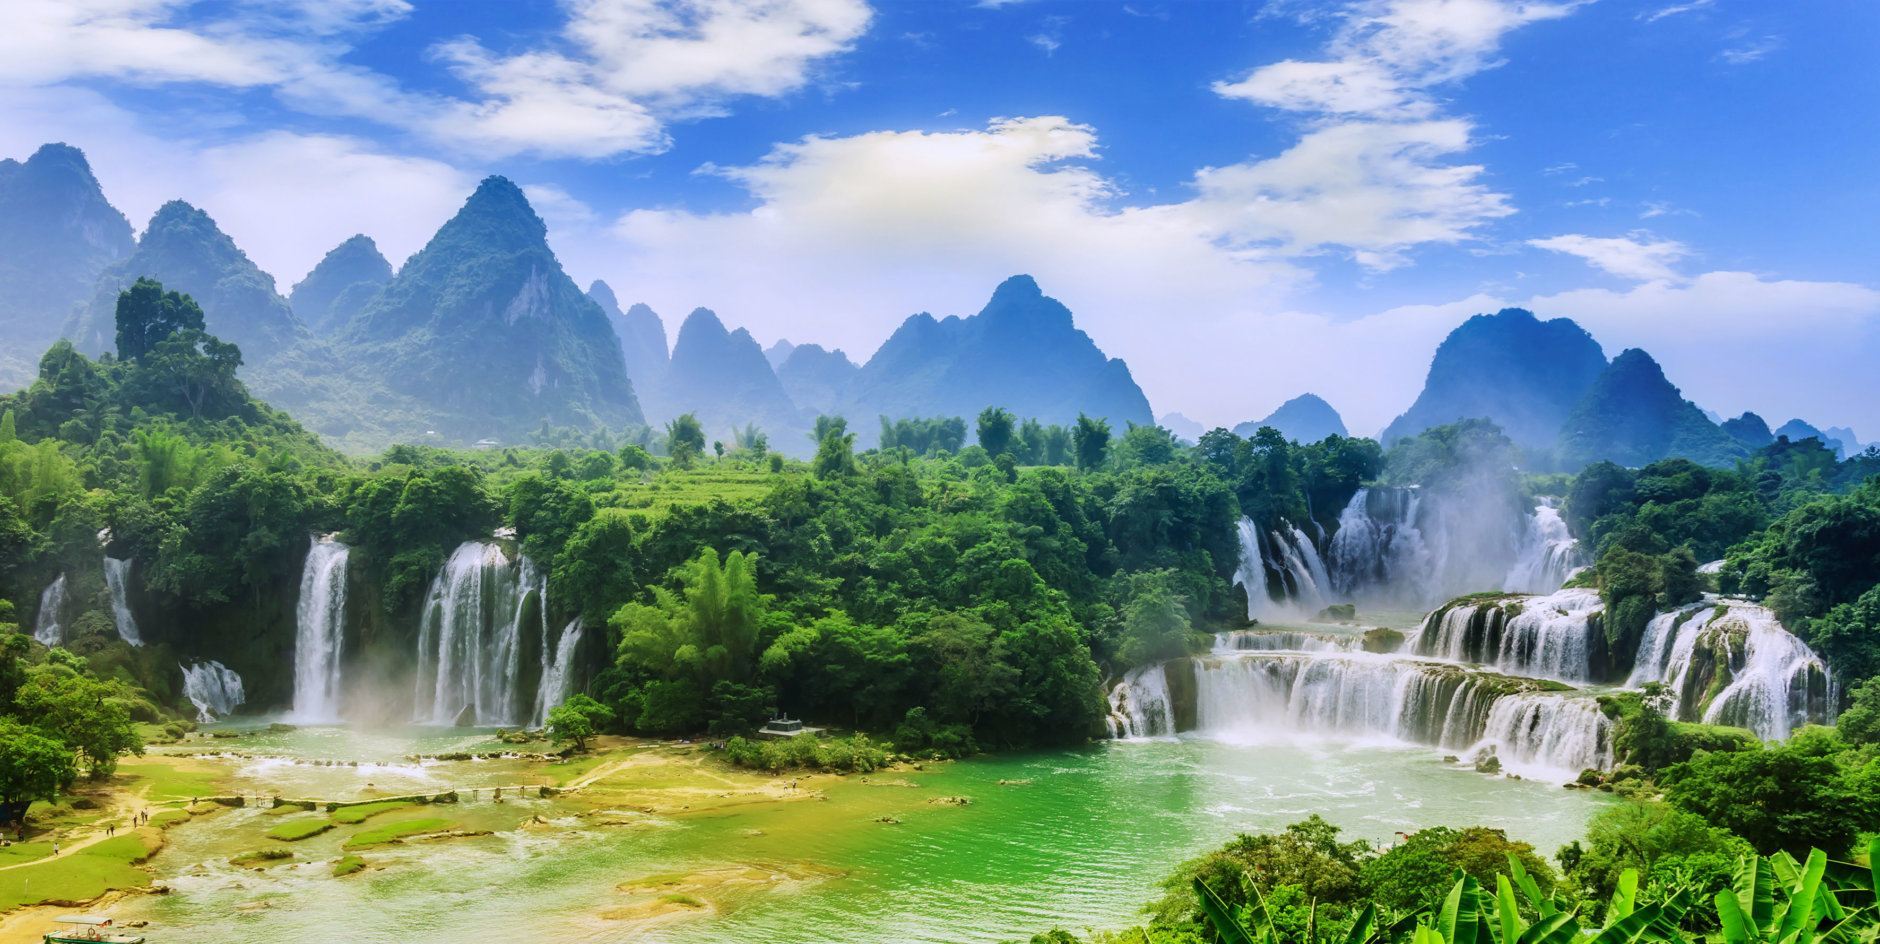 Guangxi Chinese Detian cross-border waterfall